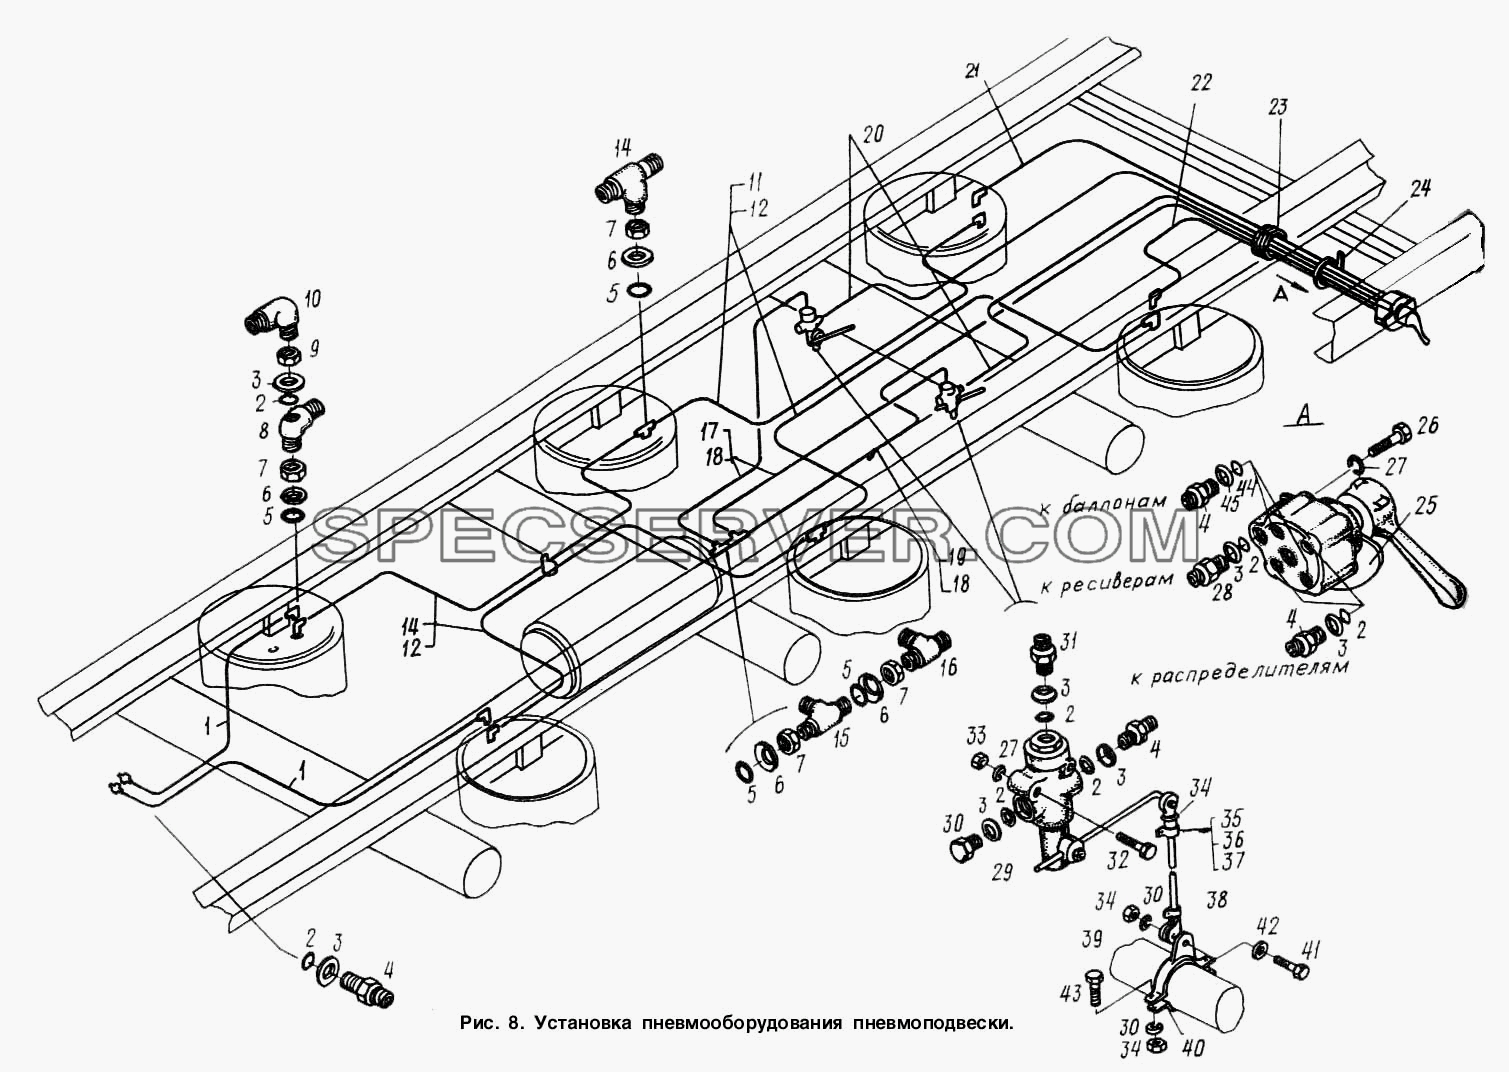 Установка пневмооборудования подвески для МАЗ-9758 (список запасных частей)